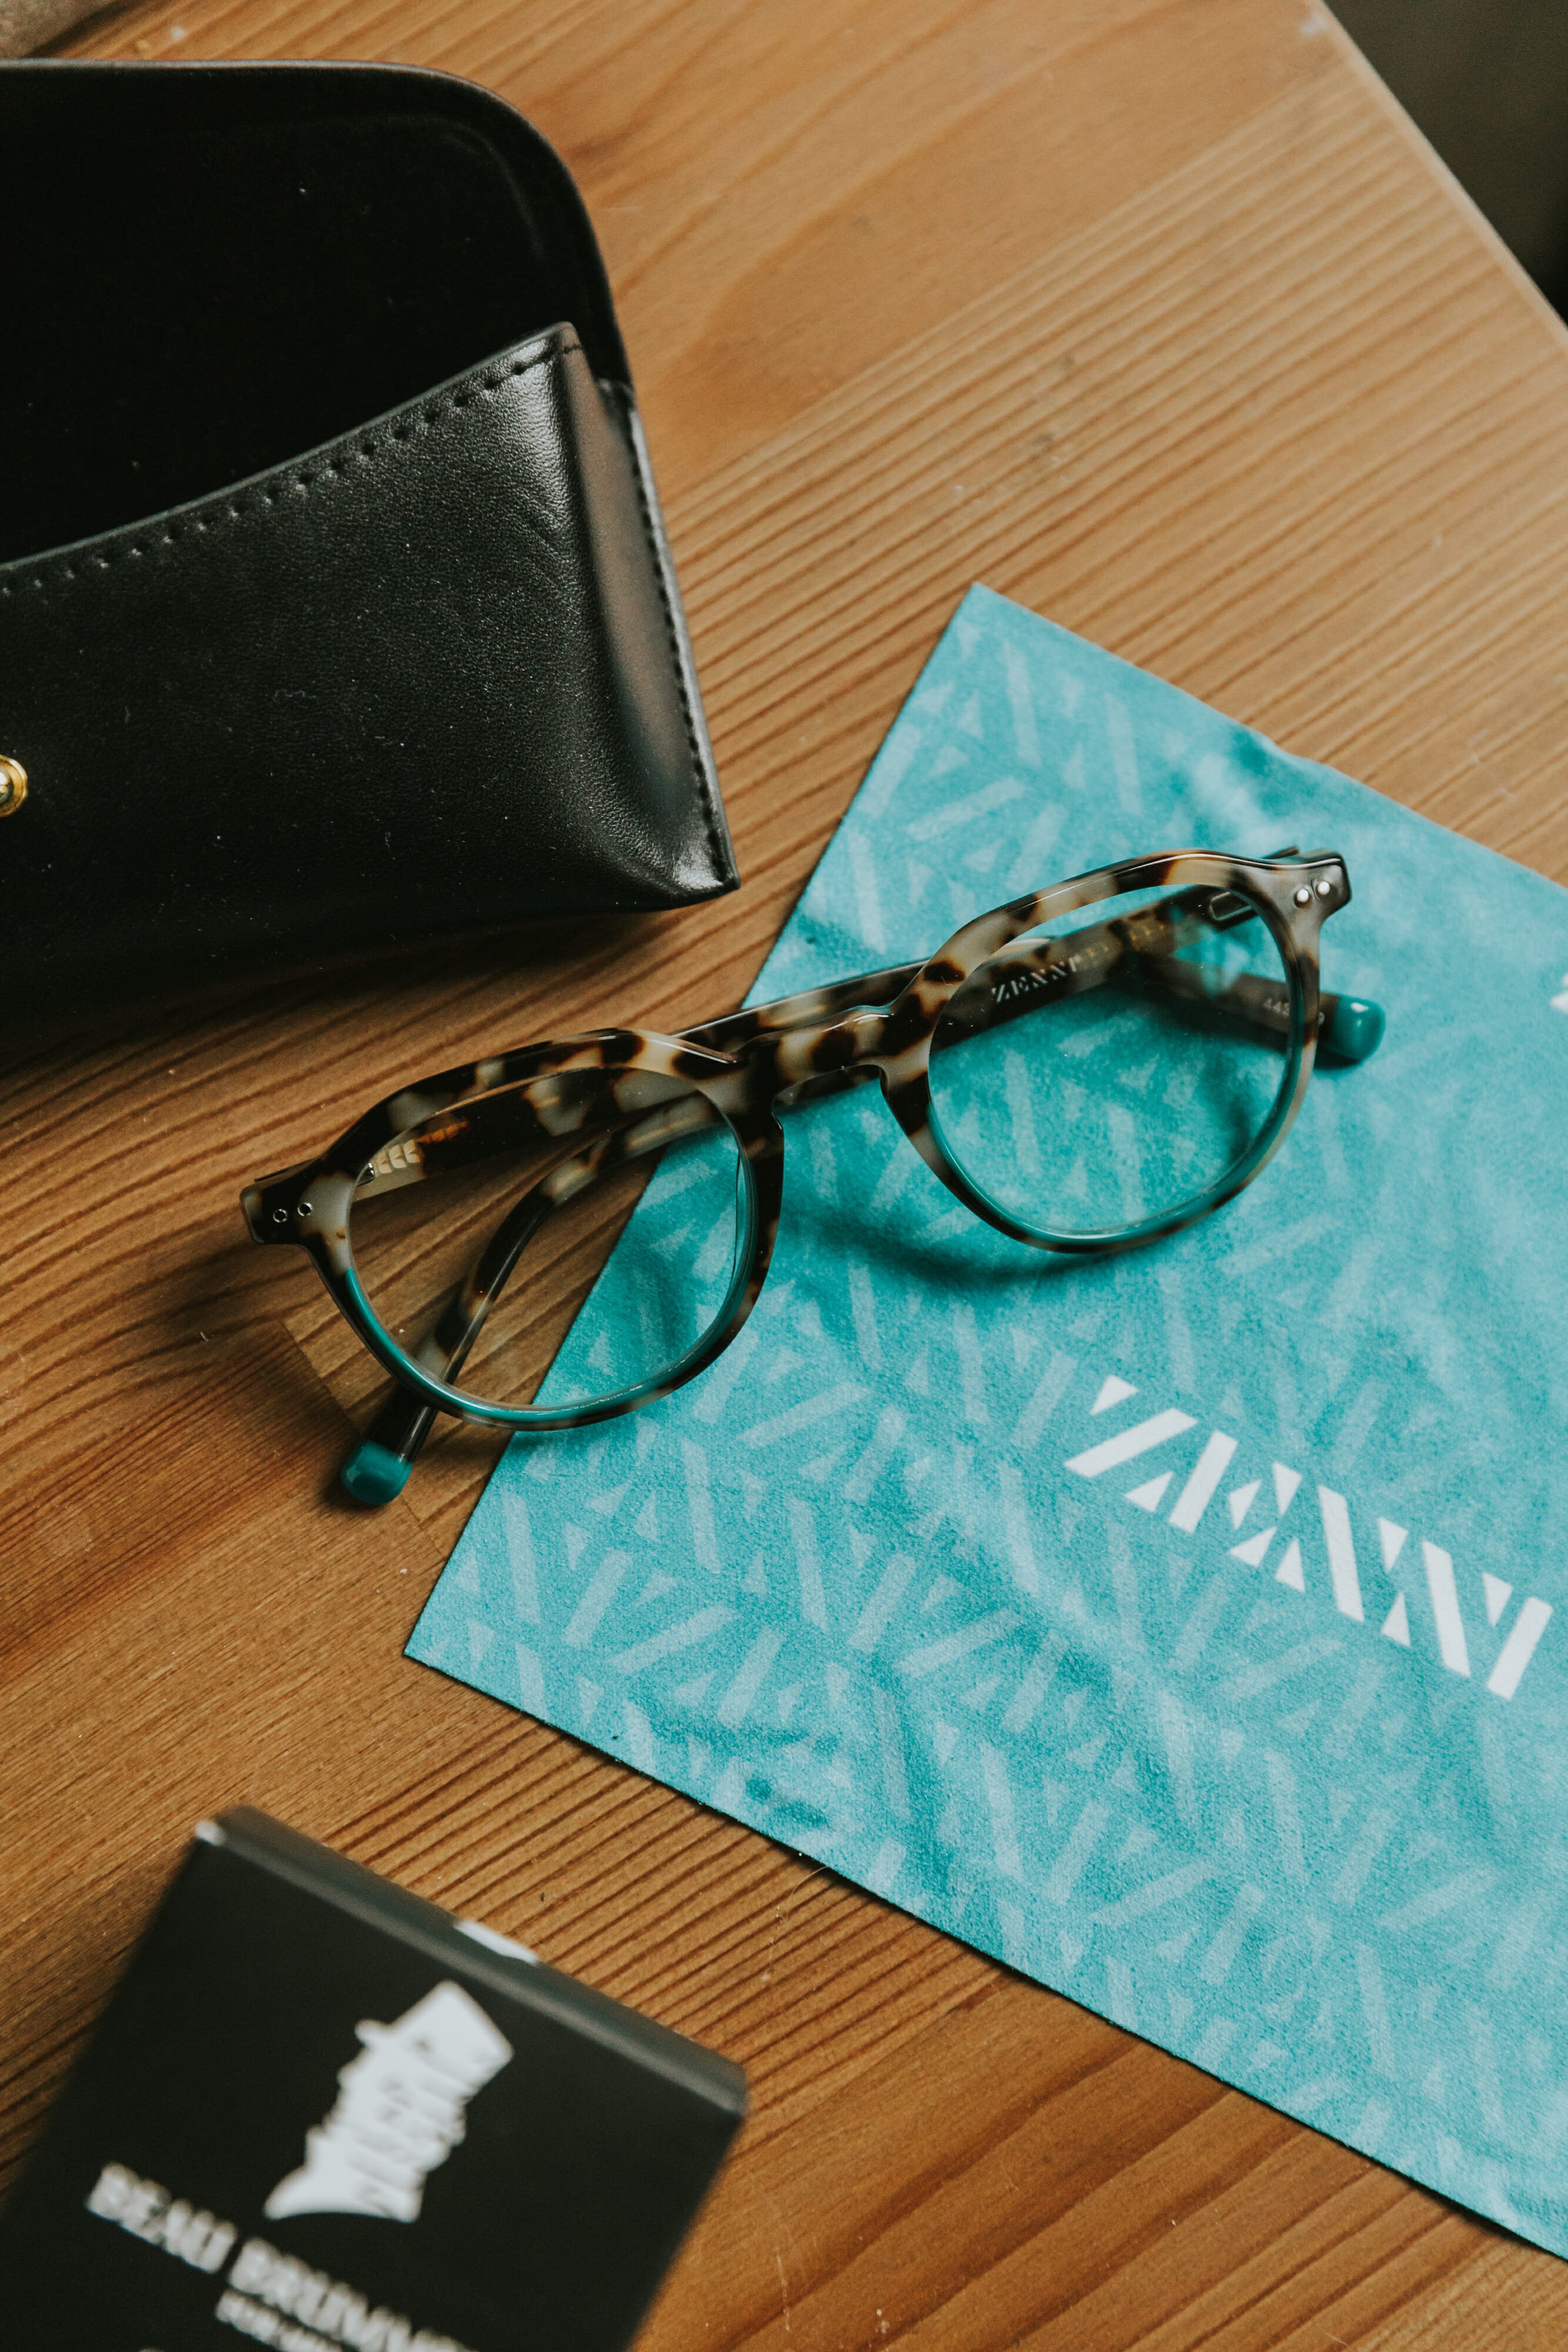 zenni optical glasses